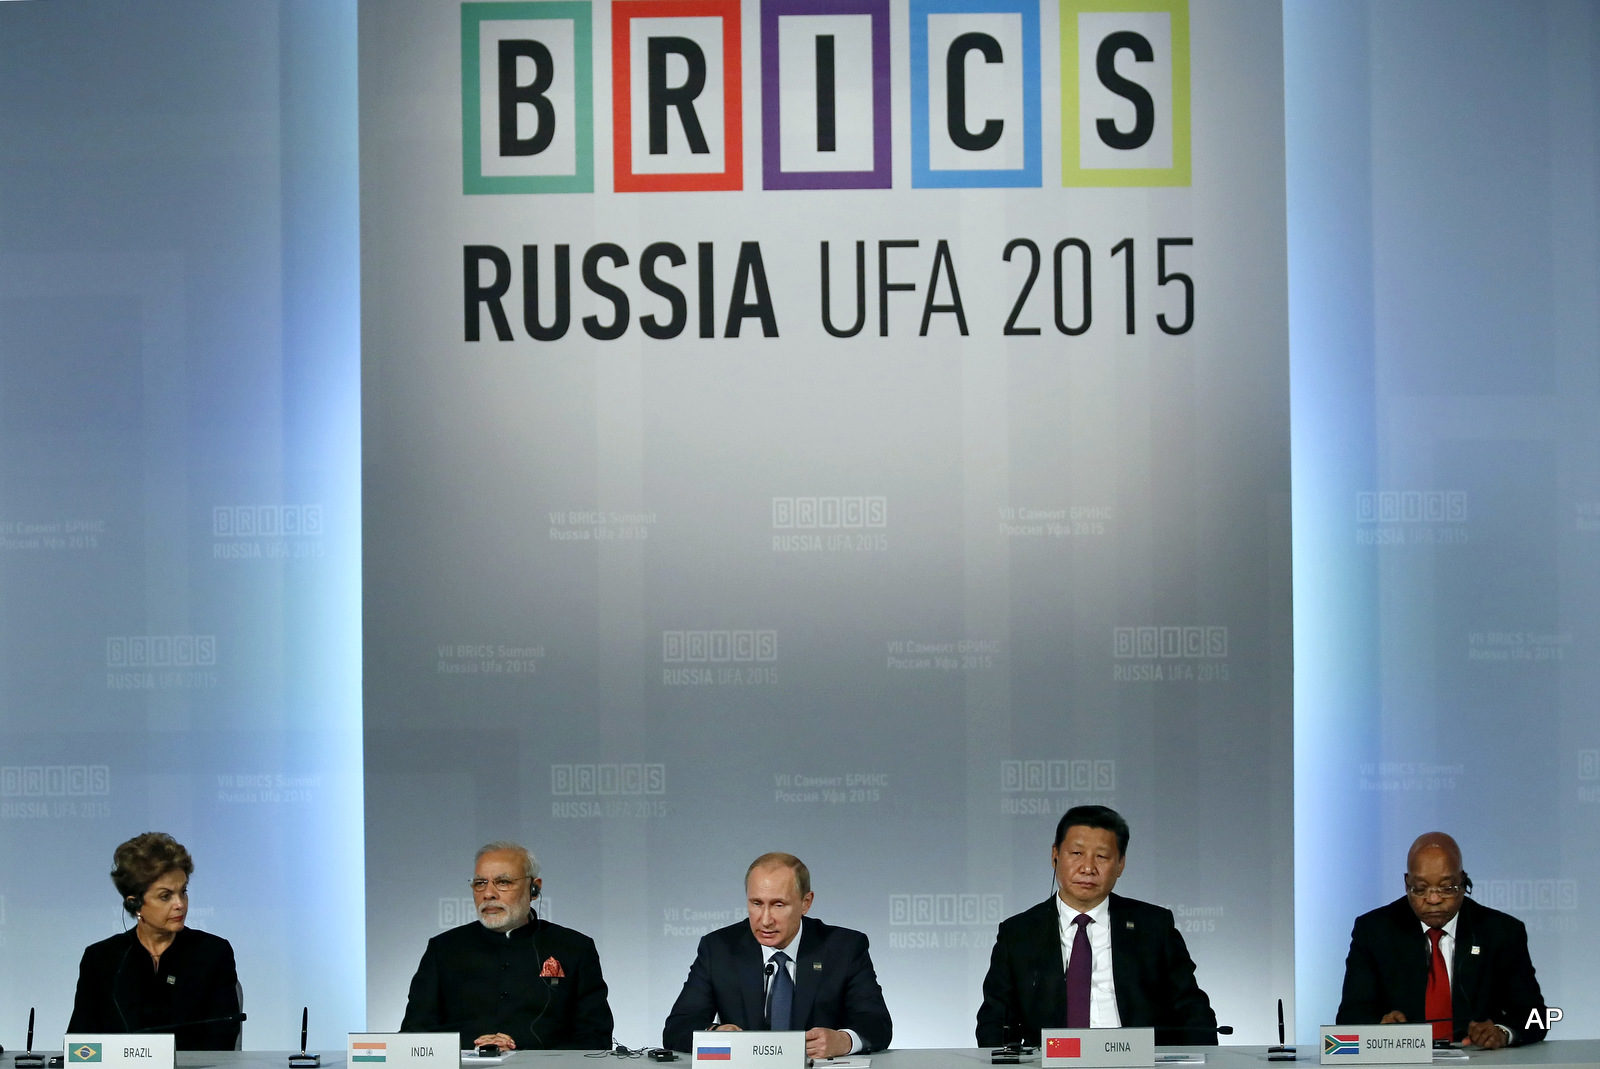 BRICS Summit in Ufa, Russia